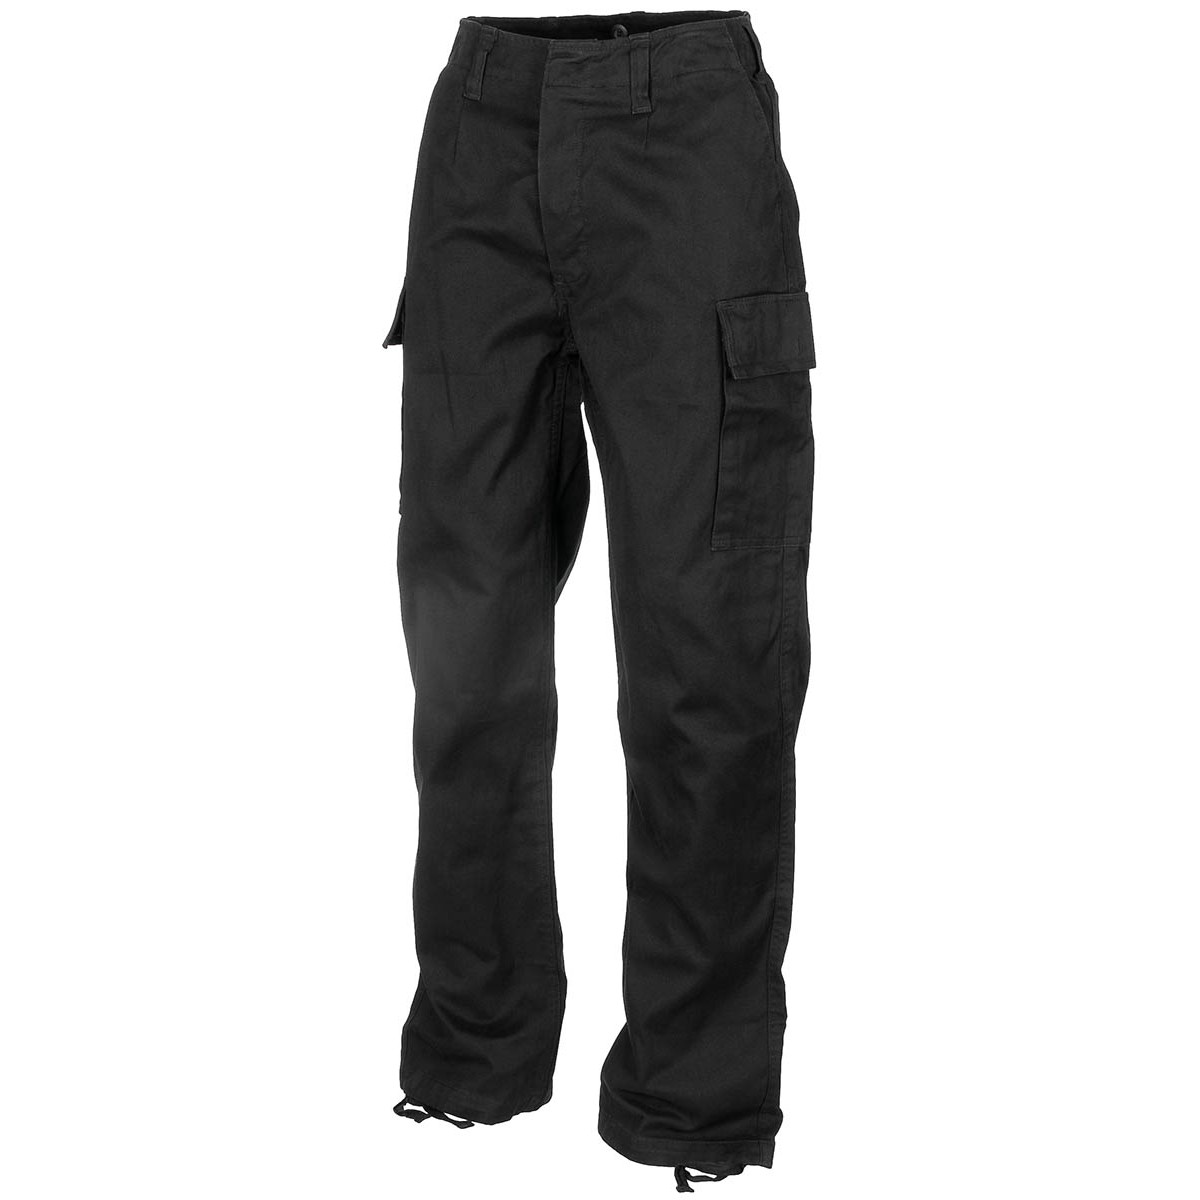 Kalhoty MFH Moleskin Washed - černé, XL